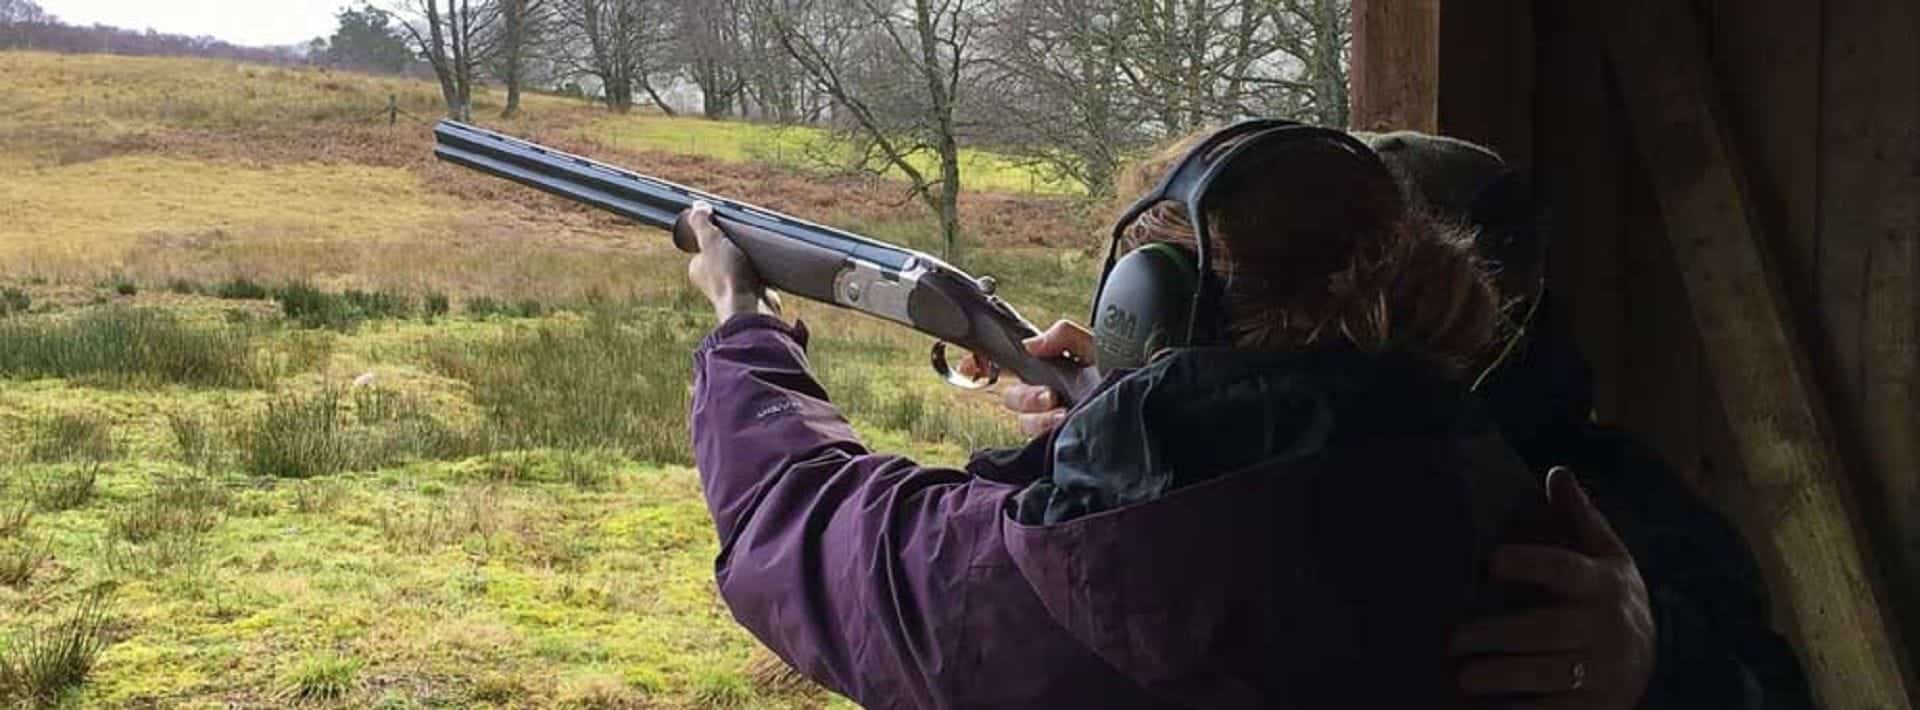 Crombie Clay Shooting in UK